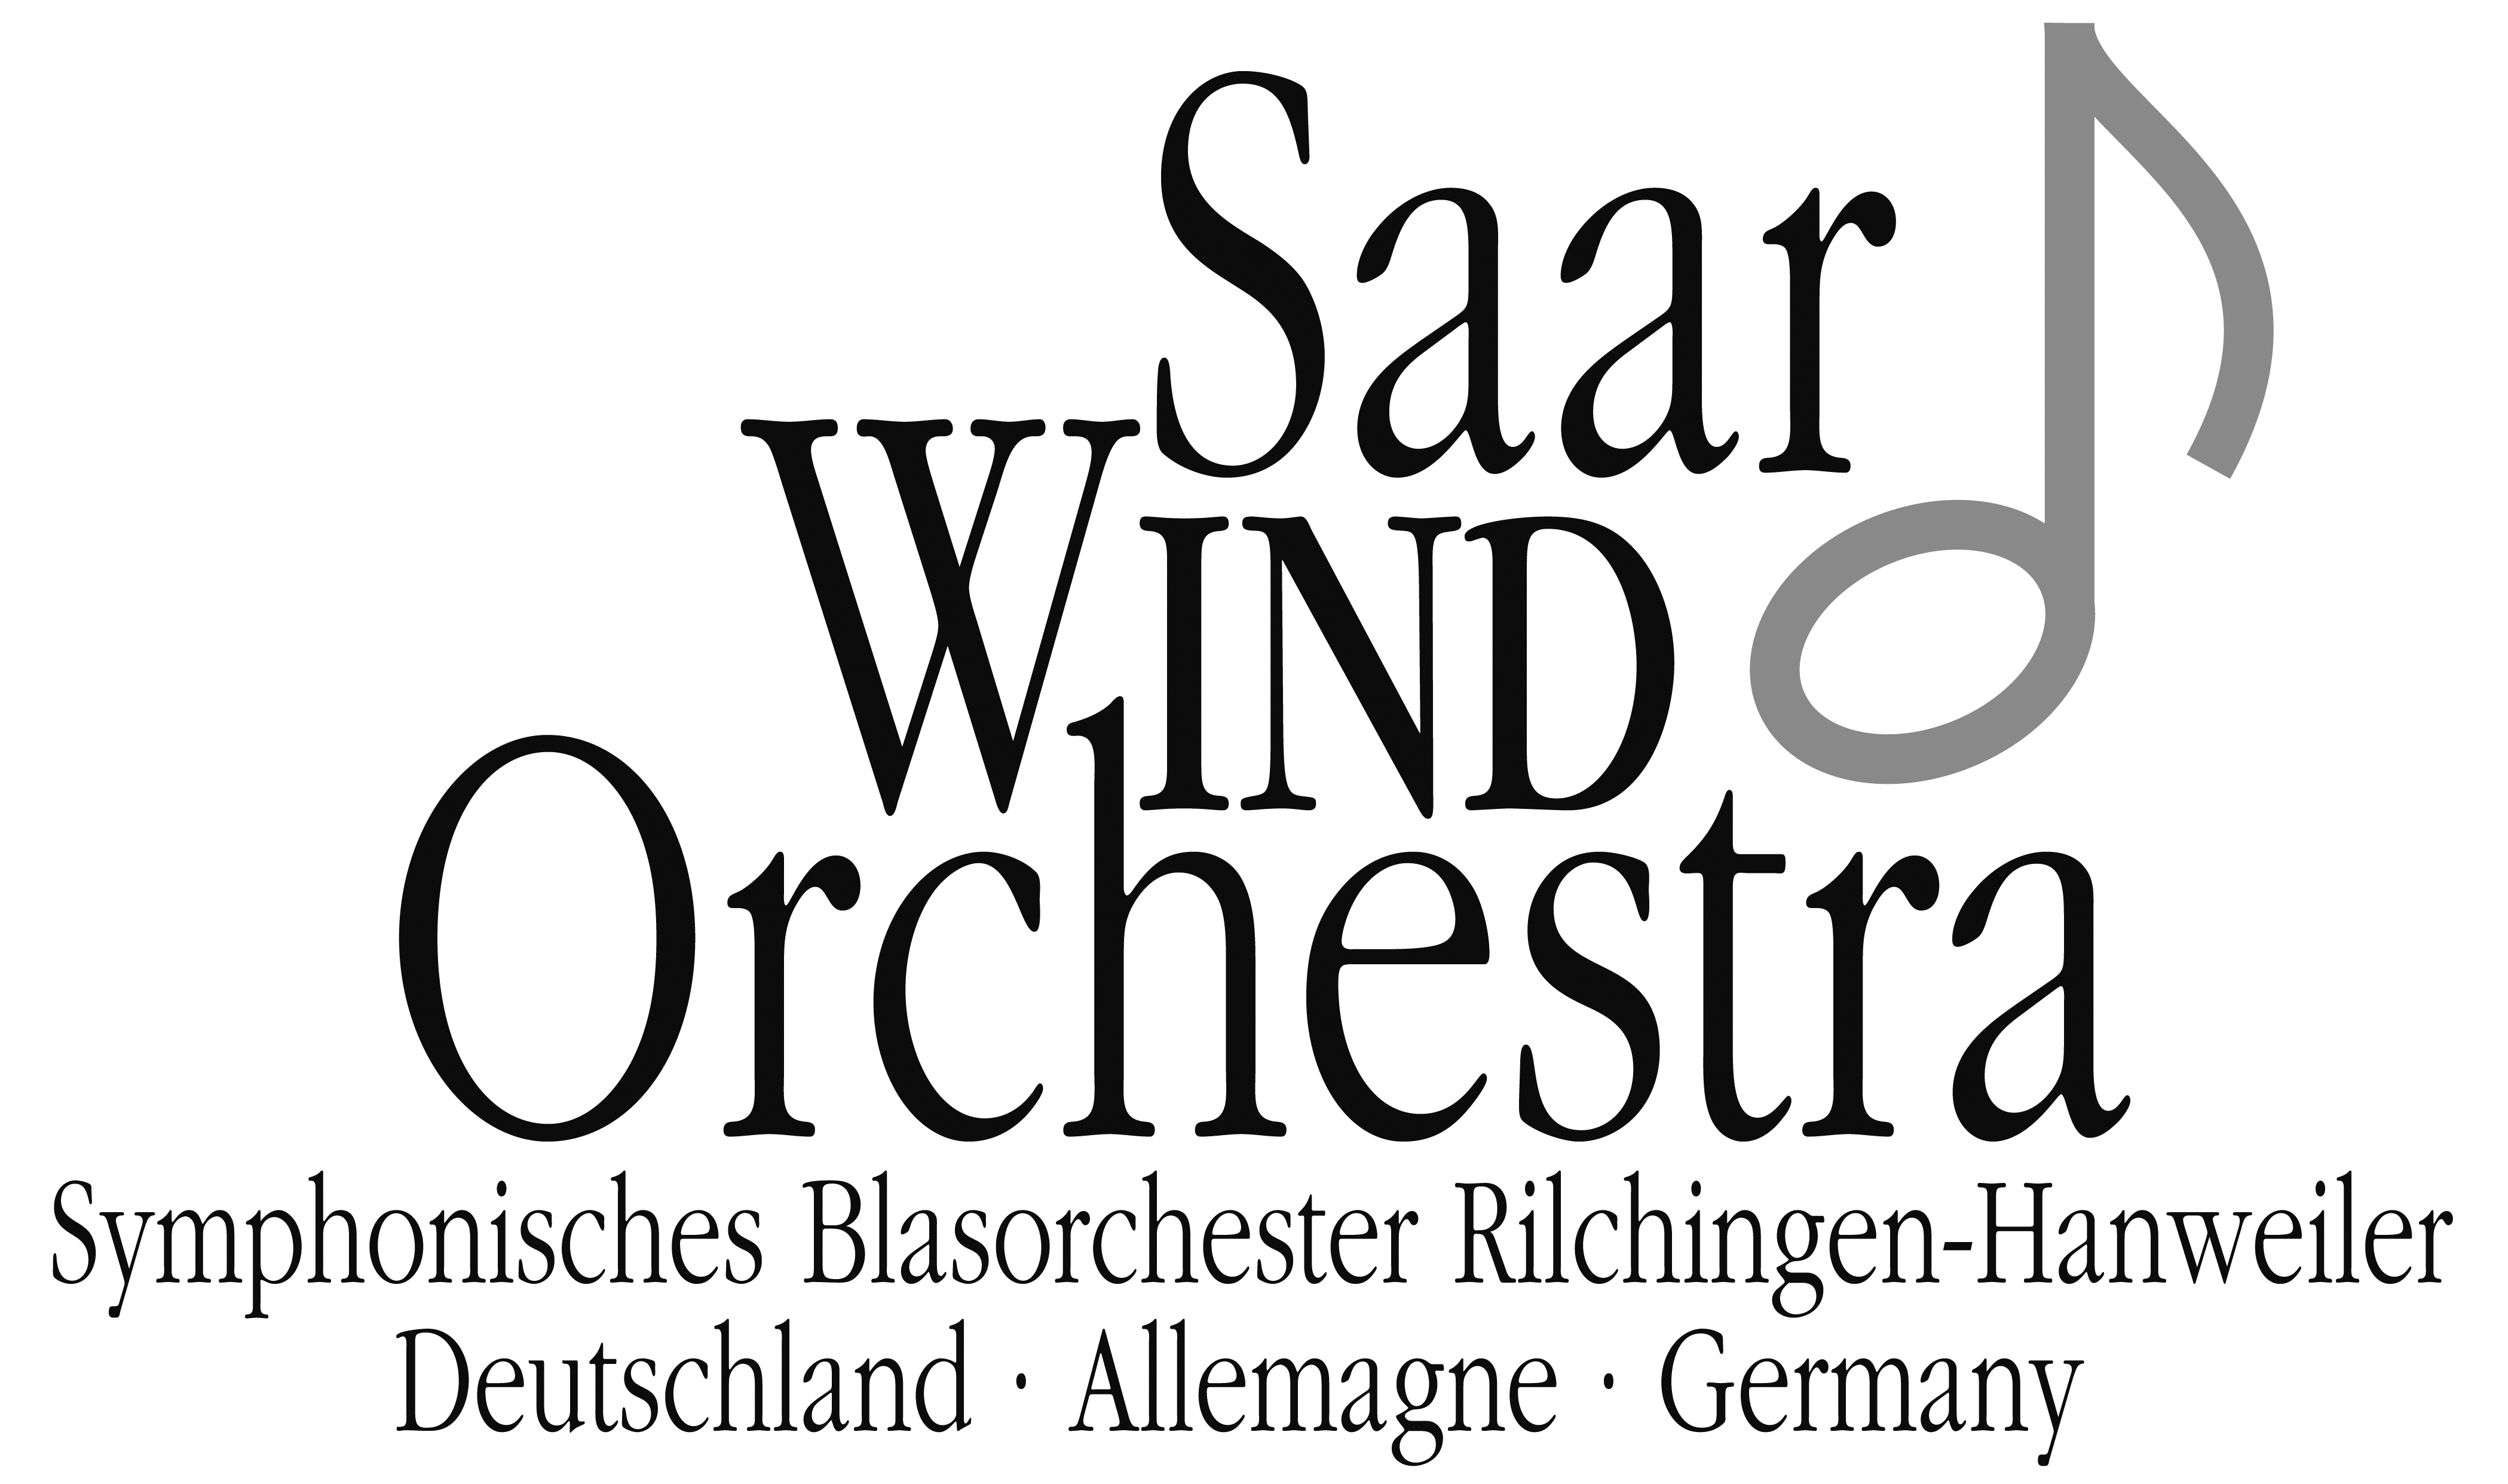 SAAR WIND ORCHESTRA Symphonisches Blasorchester Rilchingen-Hanweiler